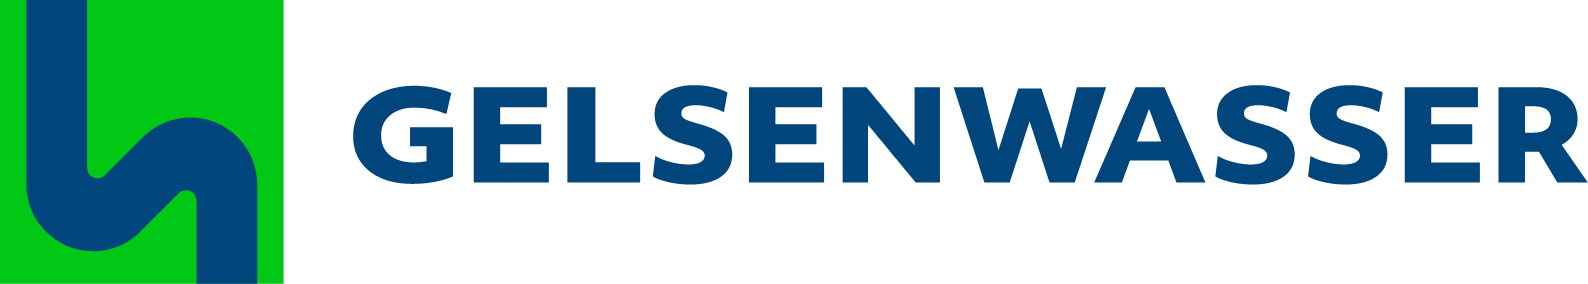 Gelsenwasser logo large (transparent PNG)